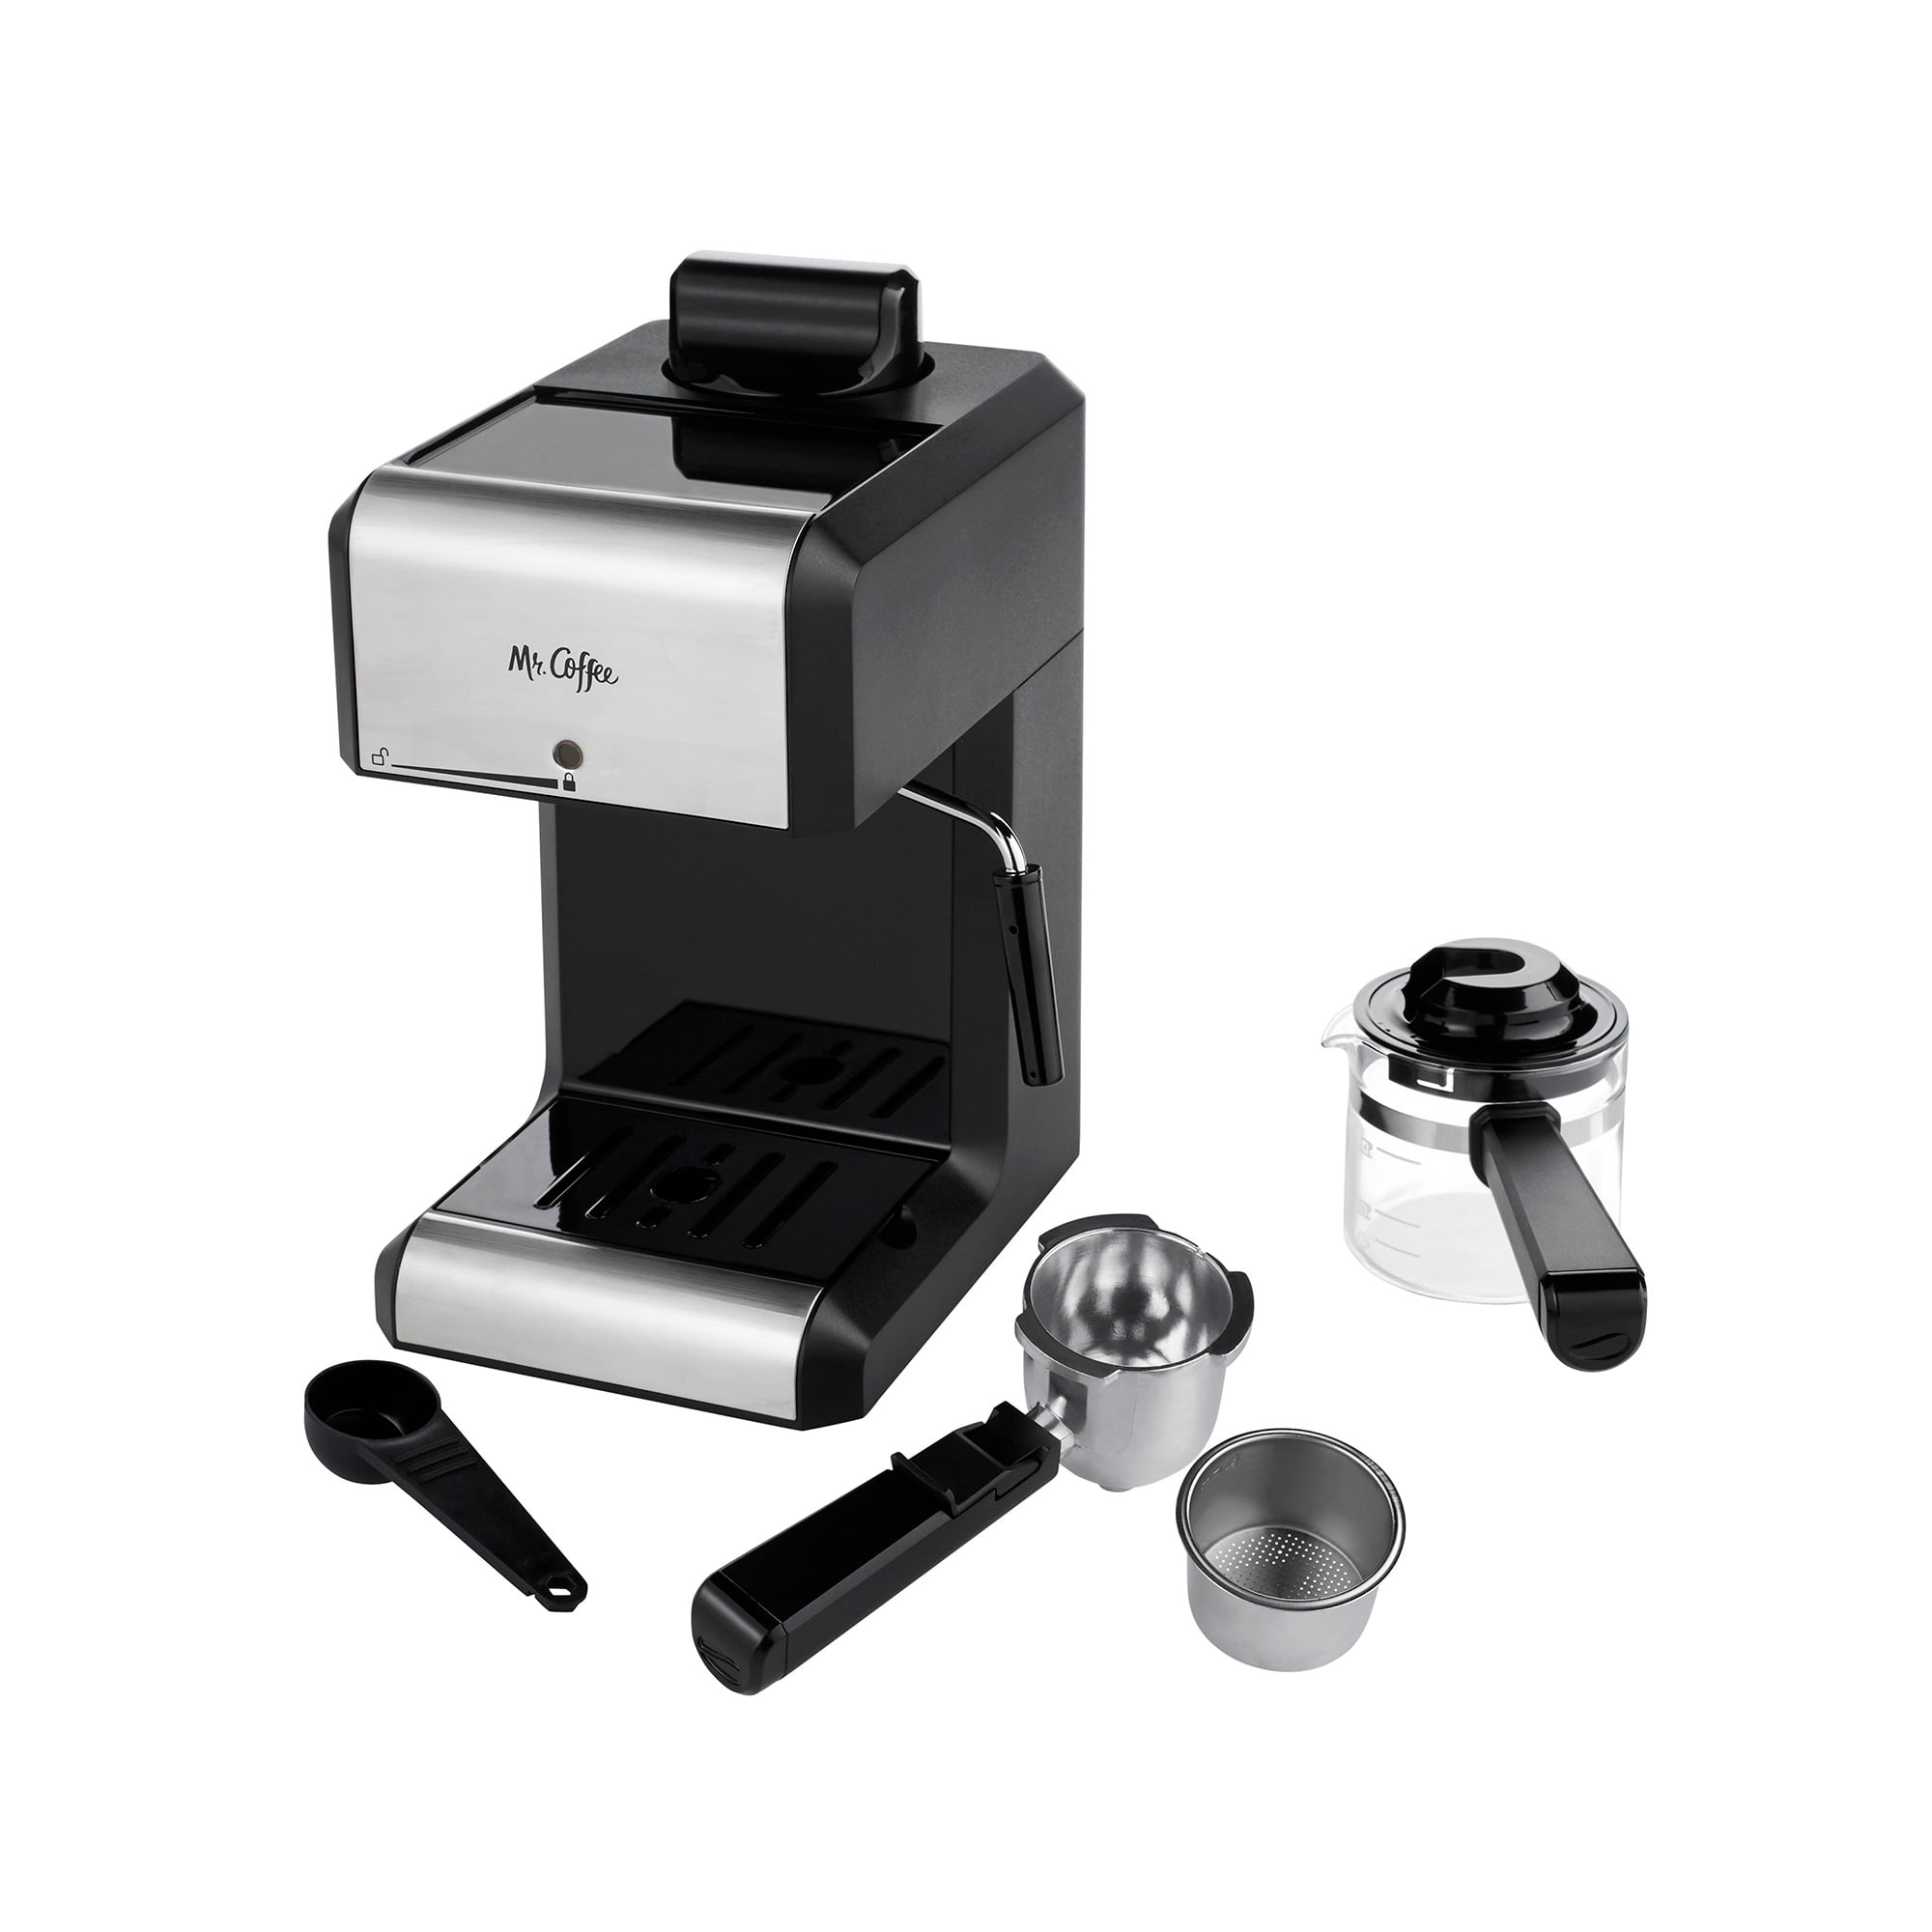 Mr Coffee REPLACEMENT PARTS Model BVMC-ECM260 Espresso Machine Cappuccino Maker 